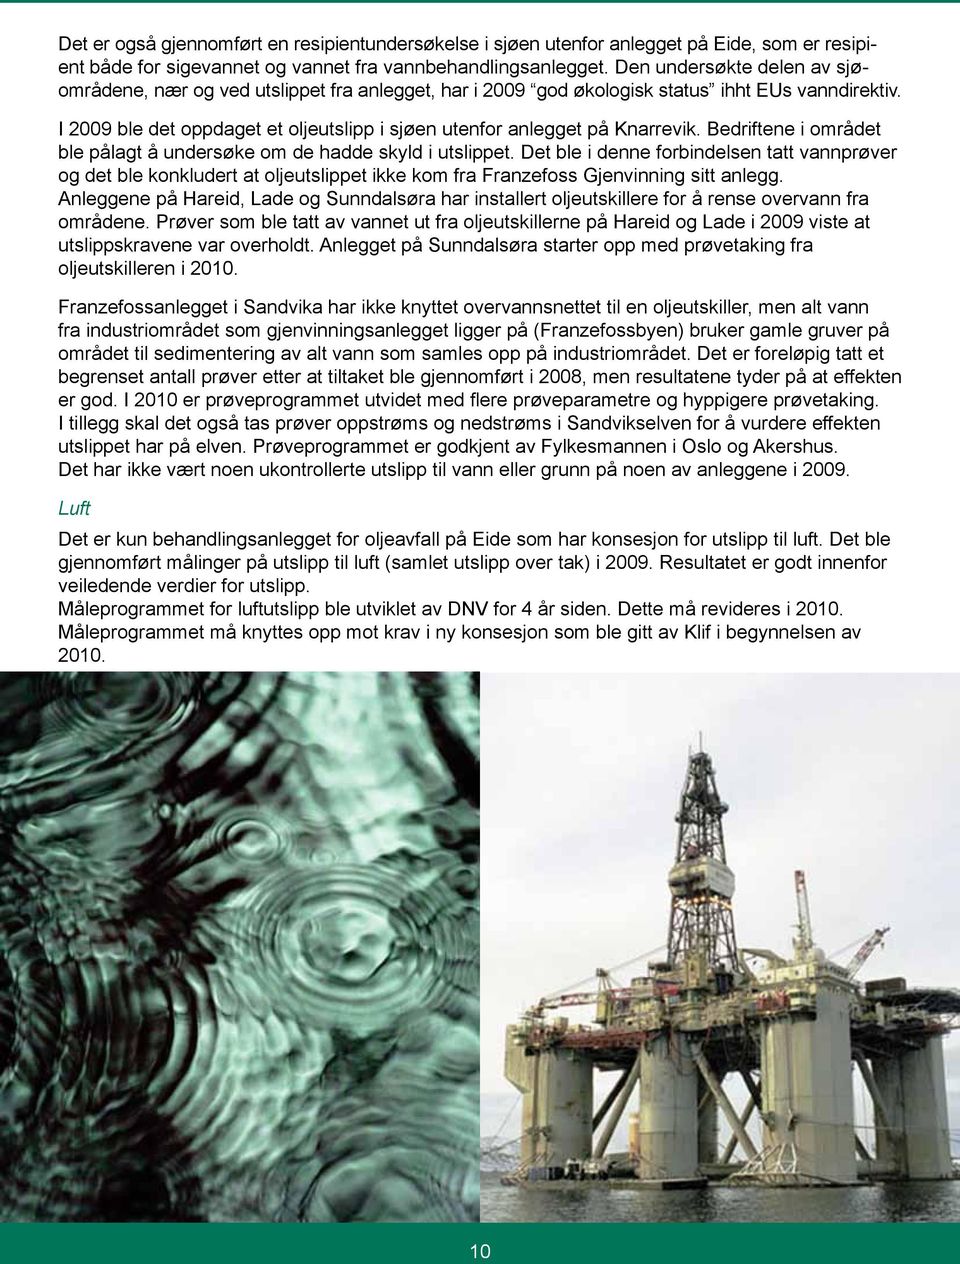 I 2009 ble det oppdaget et oljeutslipp i sjøen utenfor anlegget på Knarrevik. Bedriftene i området ble pålagt å undersøke om de hadde skyld i utslippet.